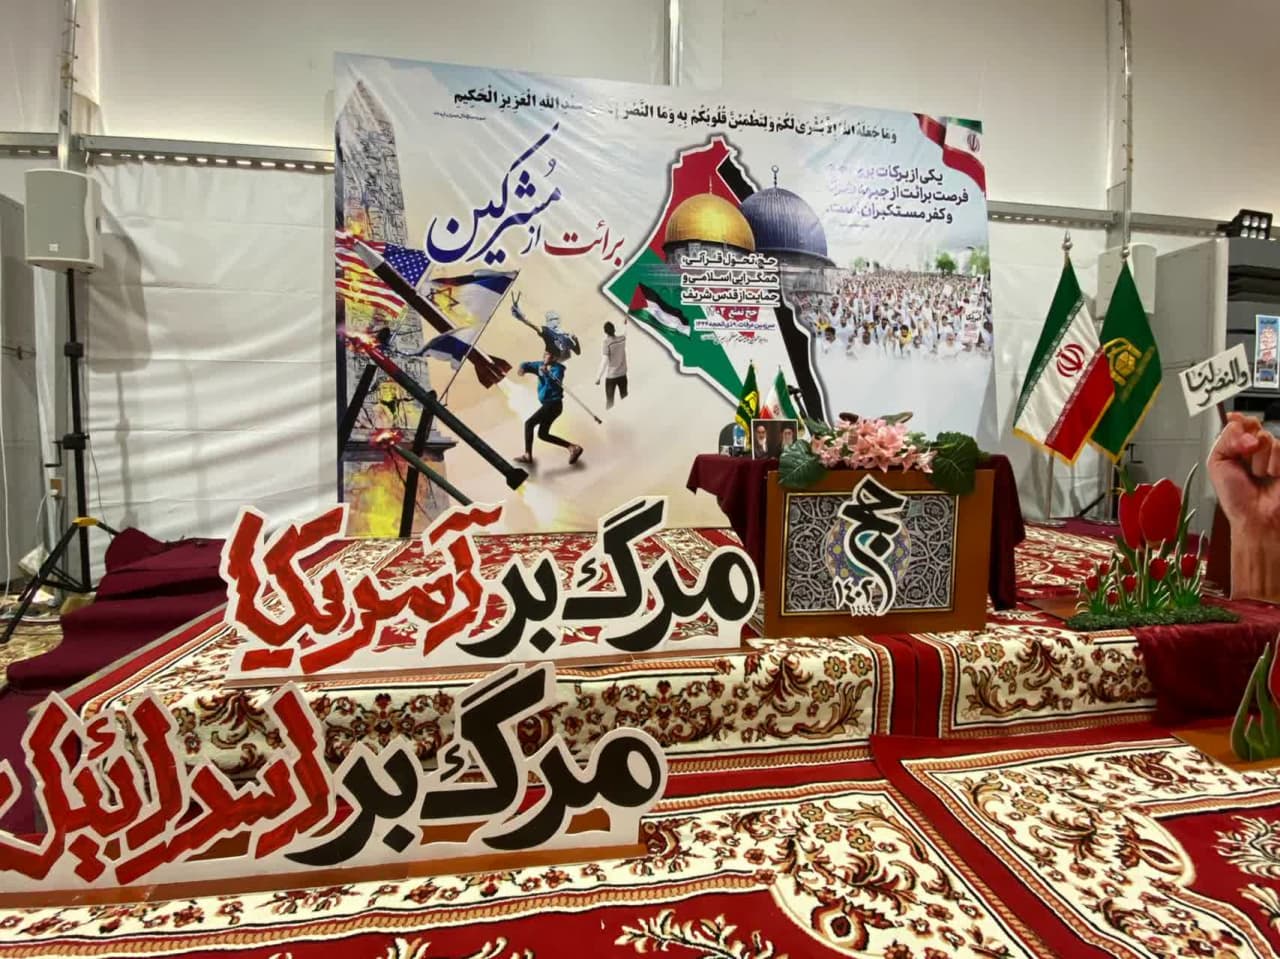 مراسم برائت از مشرکین با حضور گسترده زائران ایرانی در سرزمین عرفات برگزار می شود  